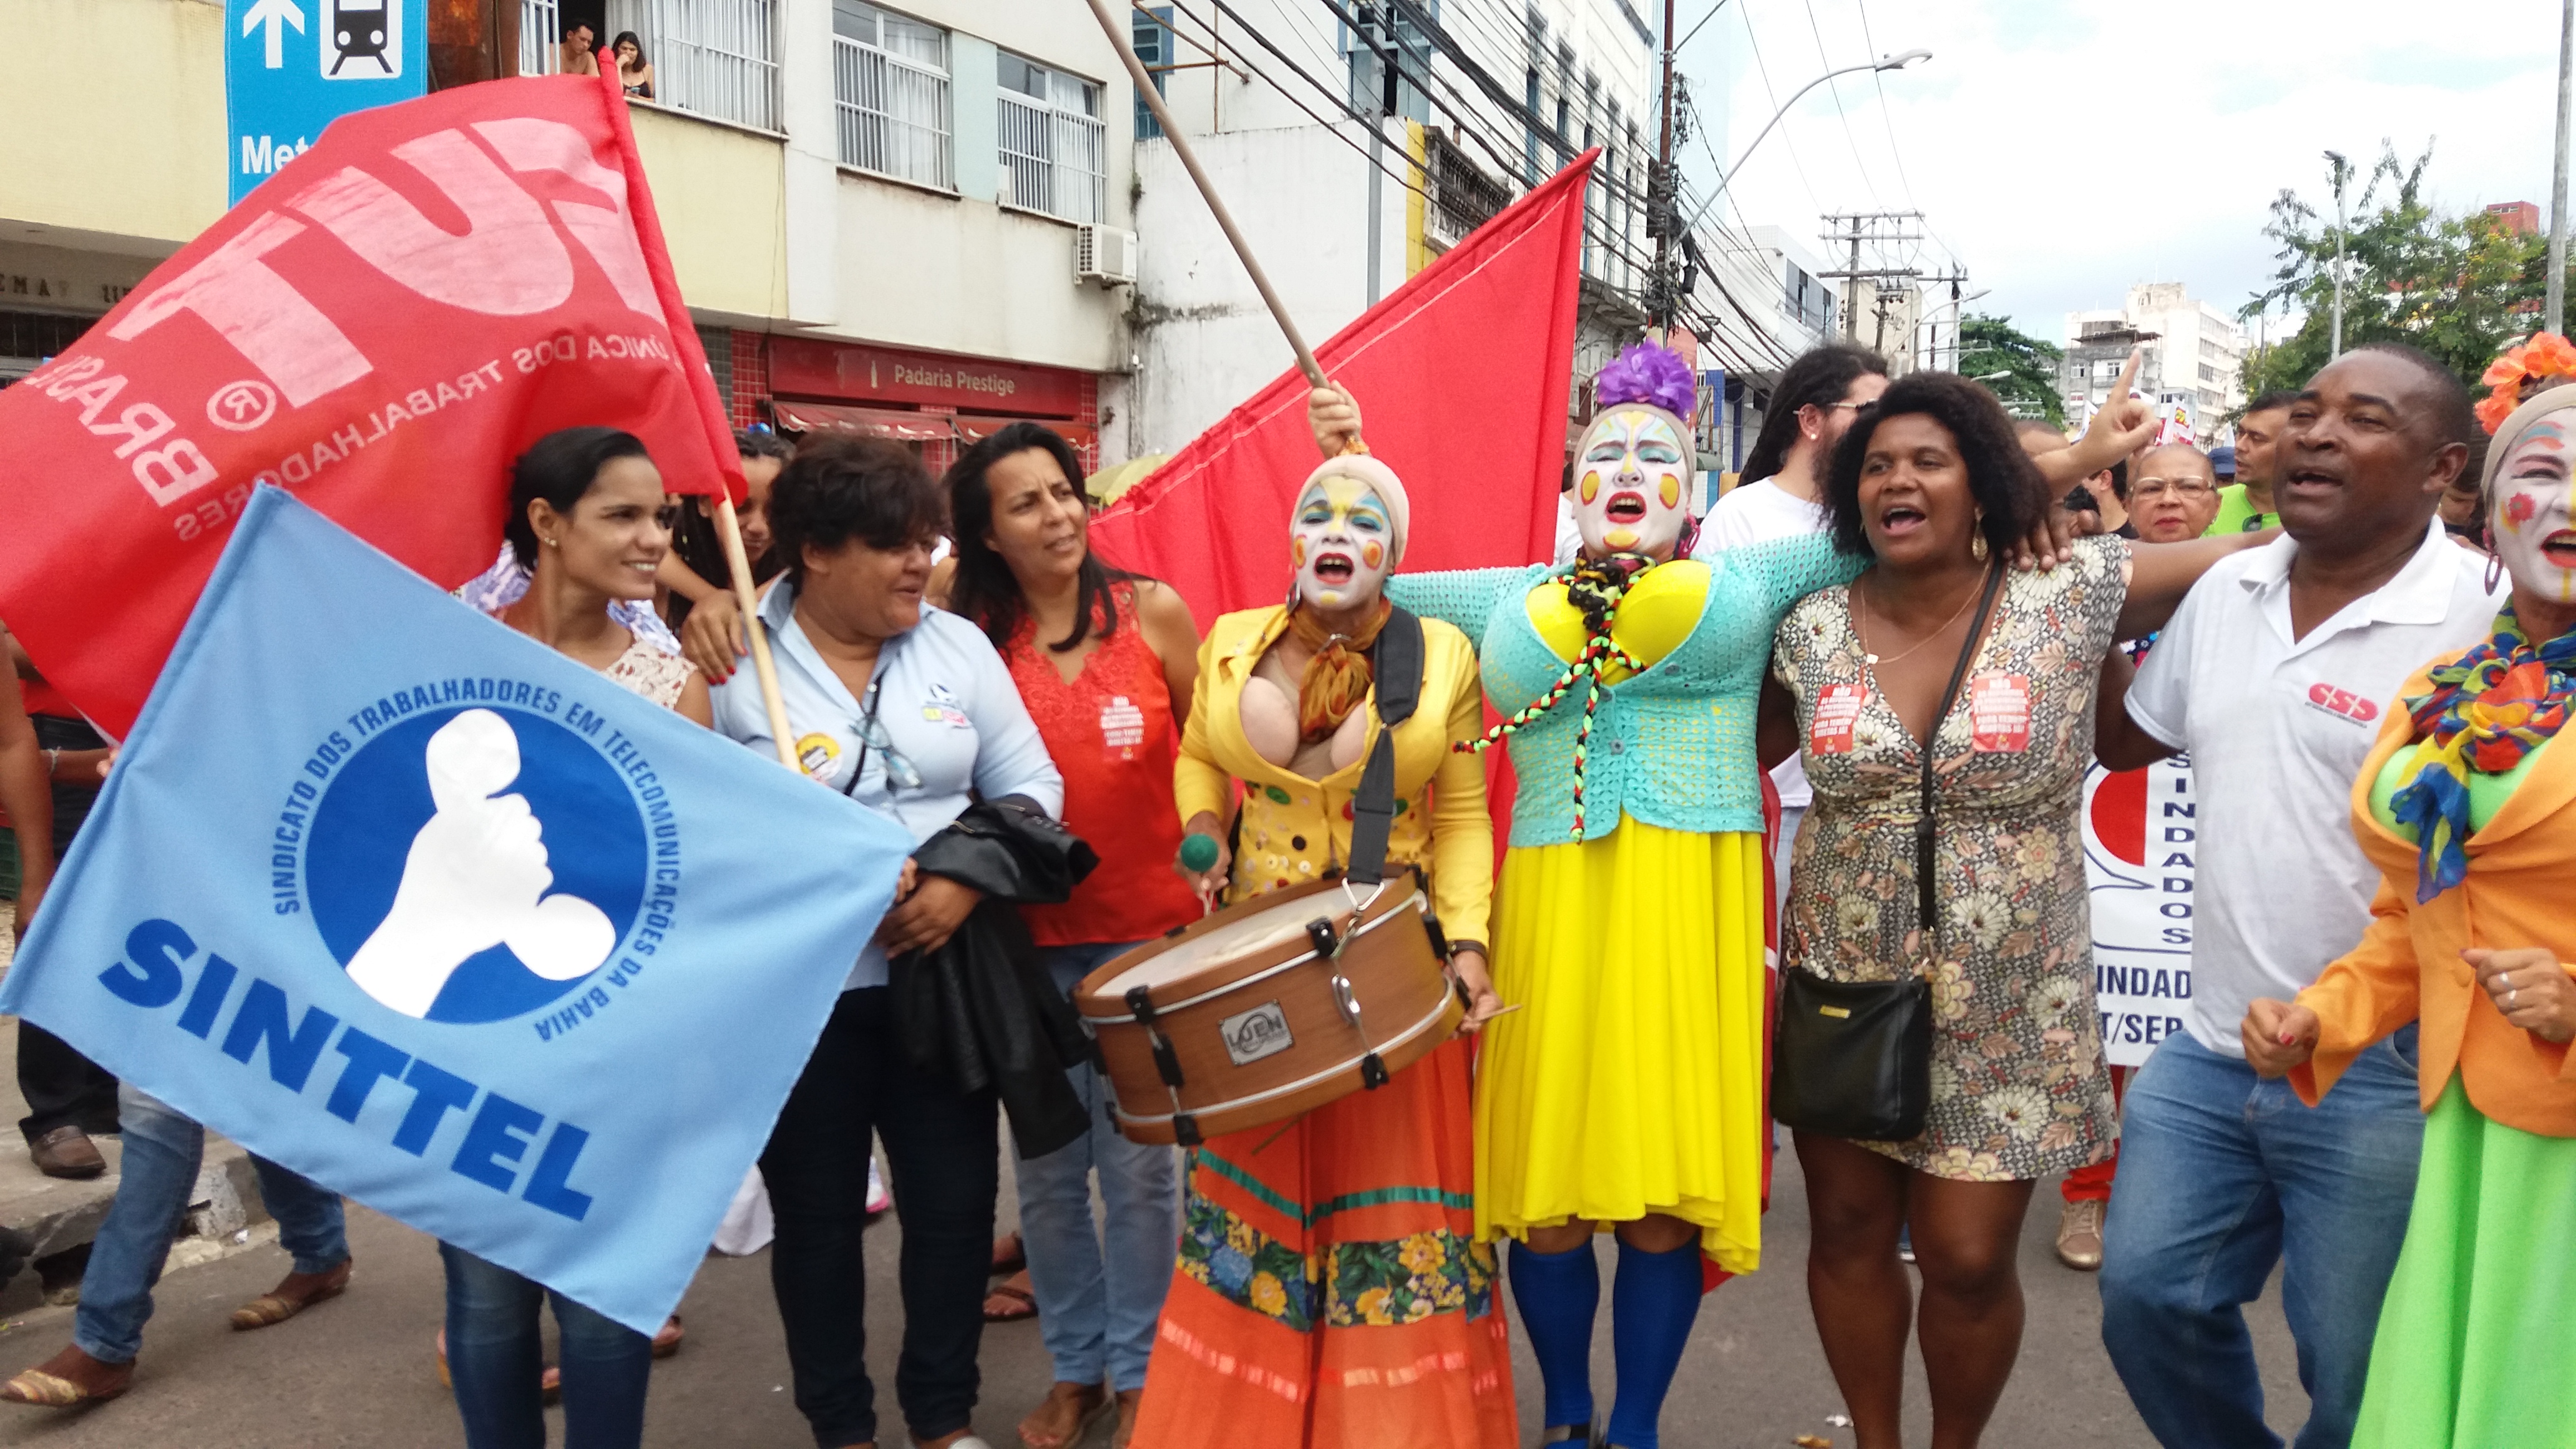 Sinttel vai às ruas contra Terceirização, Reforma da Previdência e Trabalhista